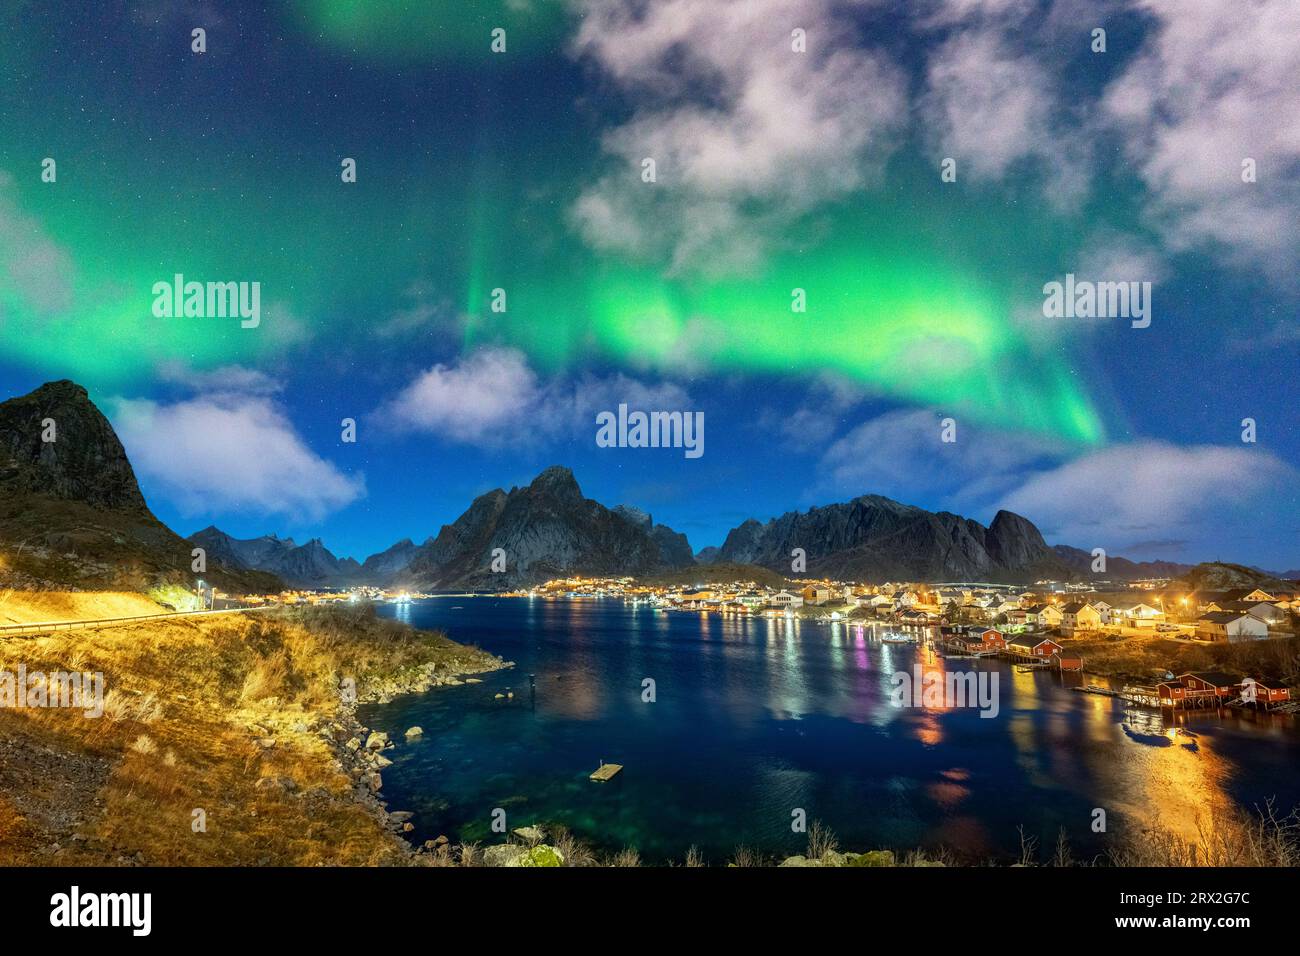 Puerto iluminado de Reine bajo las luces verdes brillantes de la Aurora Boreal (aurora boreal), Islas Lofoten, Nordland, Noruega, Escandinavia Foto de stock